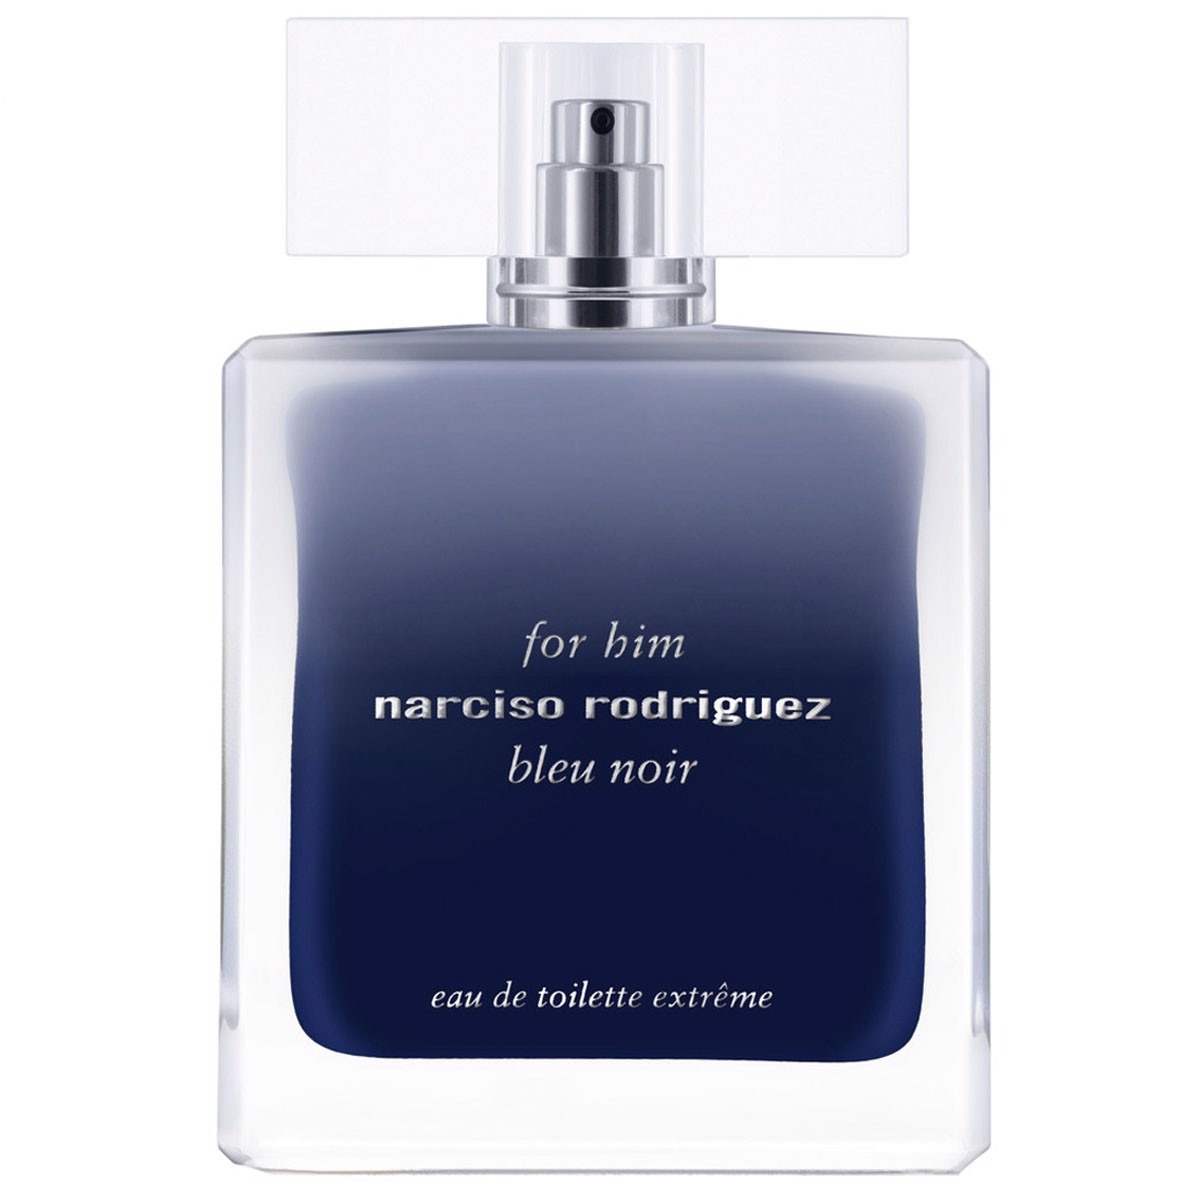 Nước hoa Narciso Rodriguez For Him Bleu Noir Eau De Toilette Extreme